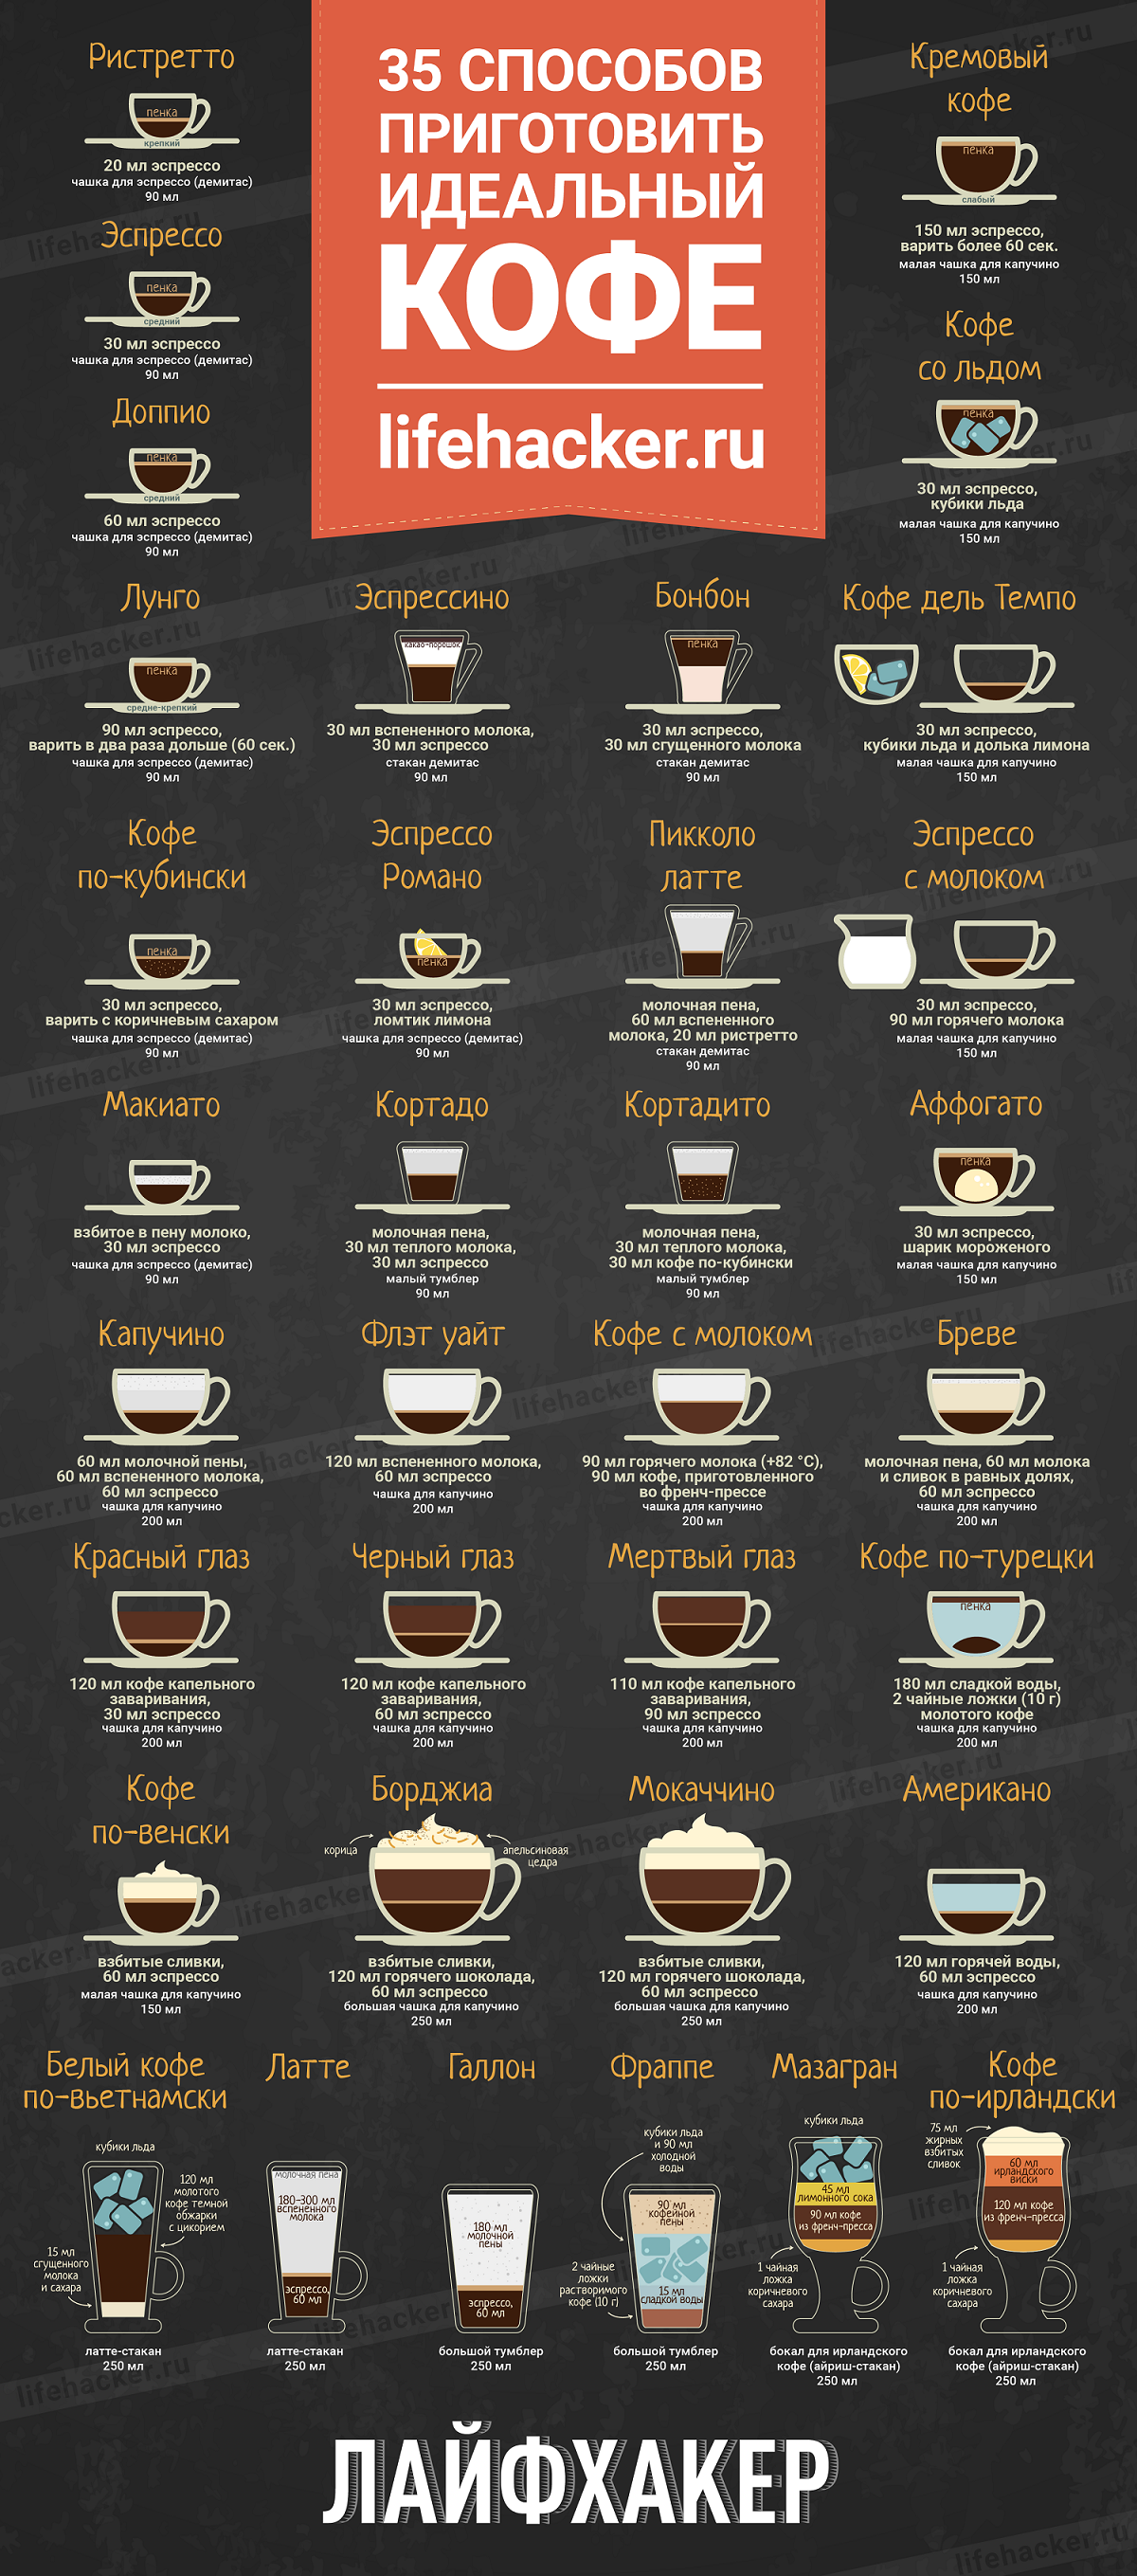 Кофейные коктейли: рецепты алкогольных и безалкогольных на основе кофе